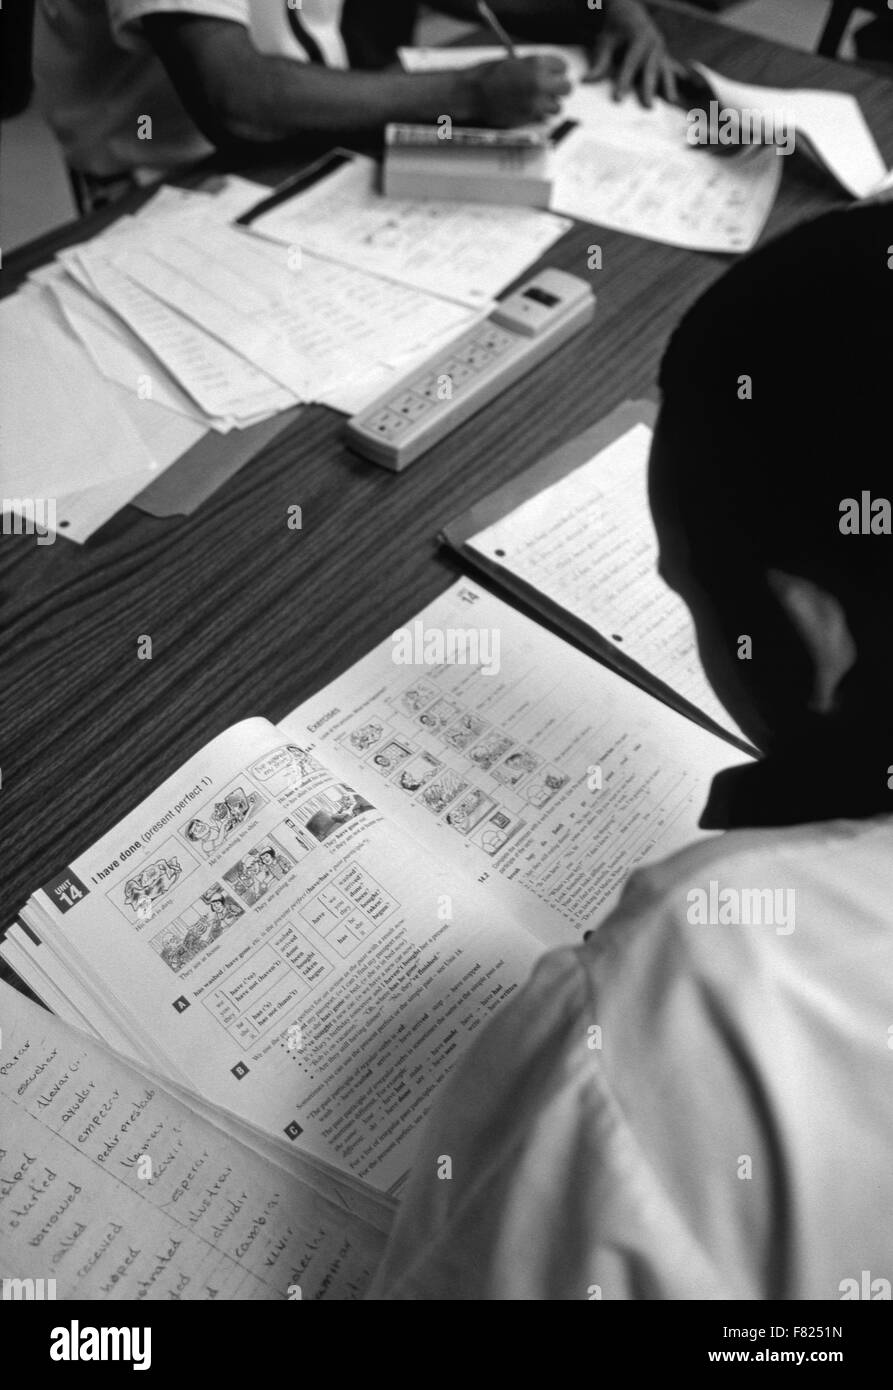 Staatliche Gefangenen studieren englische Lehrbücher in einer JVA in Georgien. Stockfoto